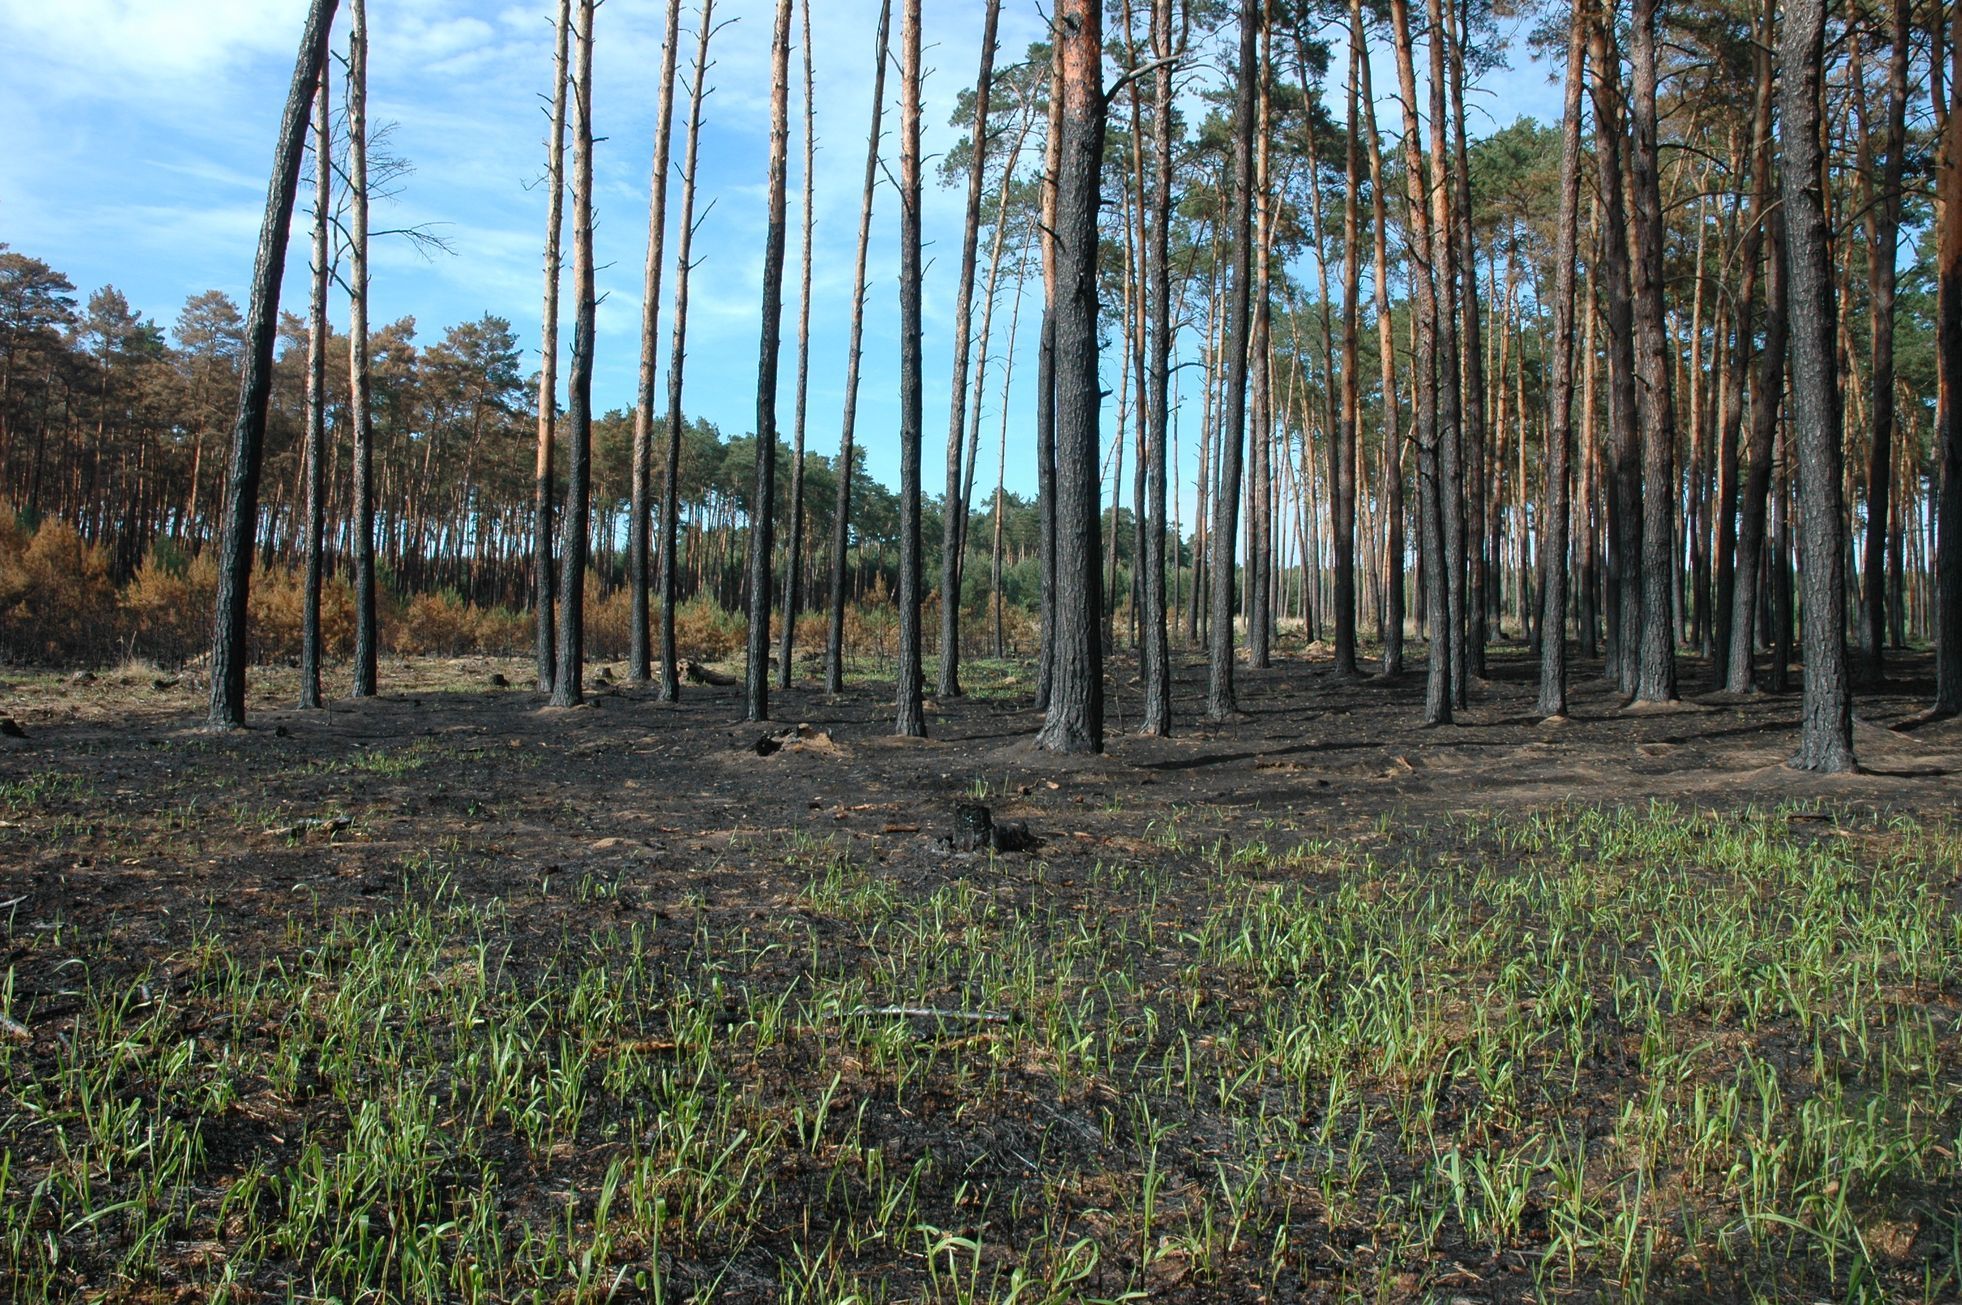 Obnova lesa po požáru